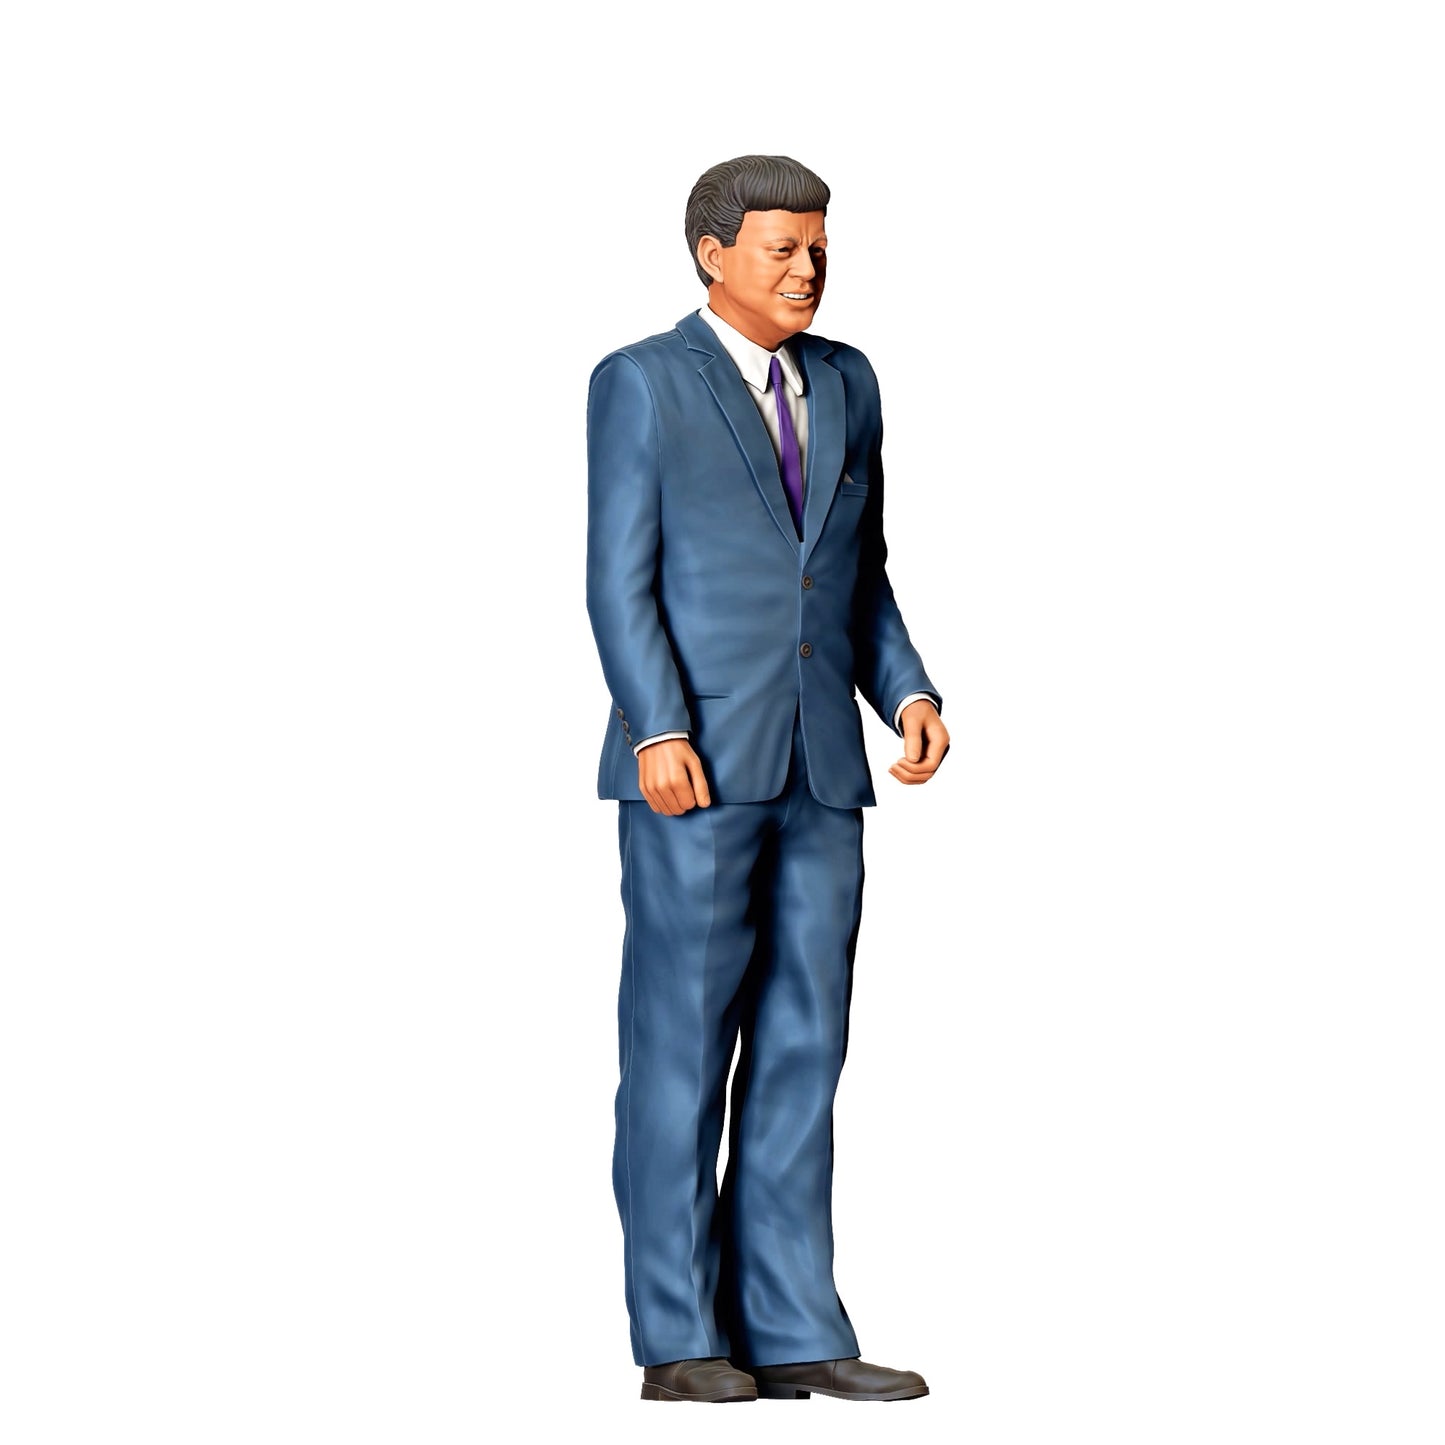 Diorama Modellbau Produktfoto 0: Mächtiger Mann - Oberhaupt der Nation (Ref. Nr. 331)